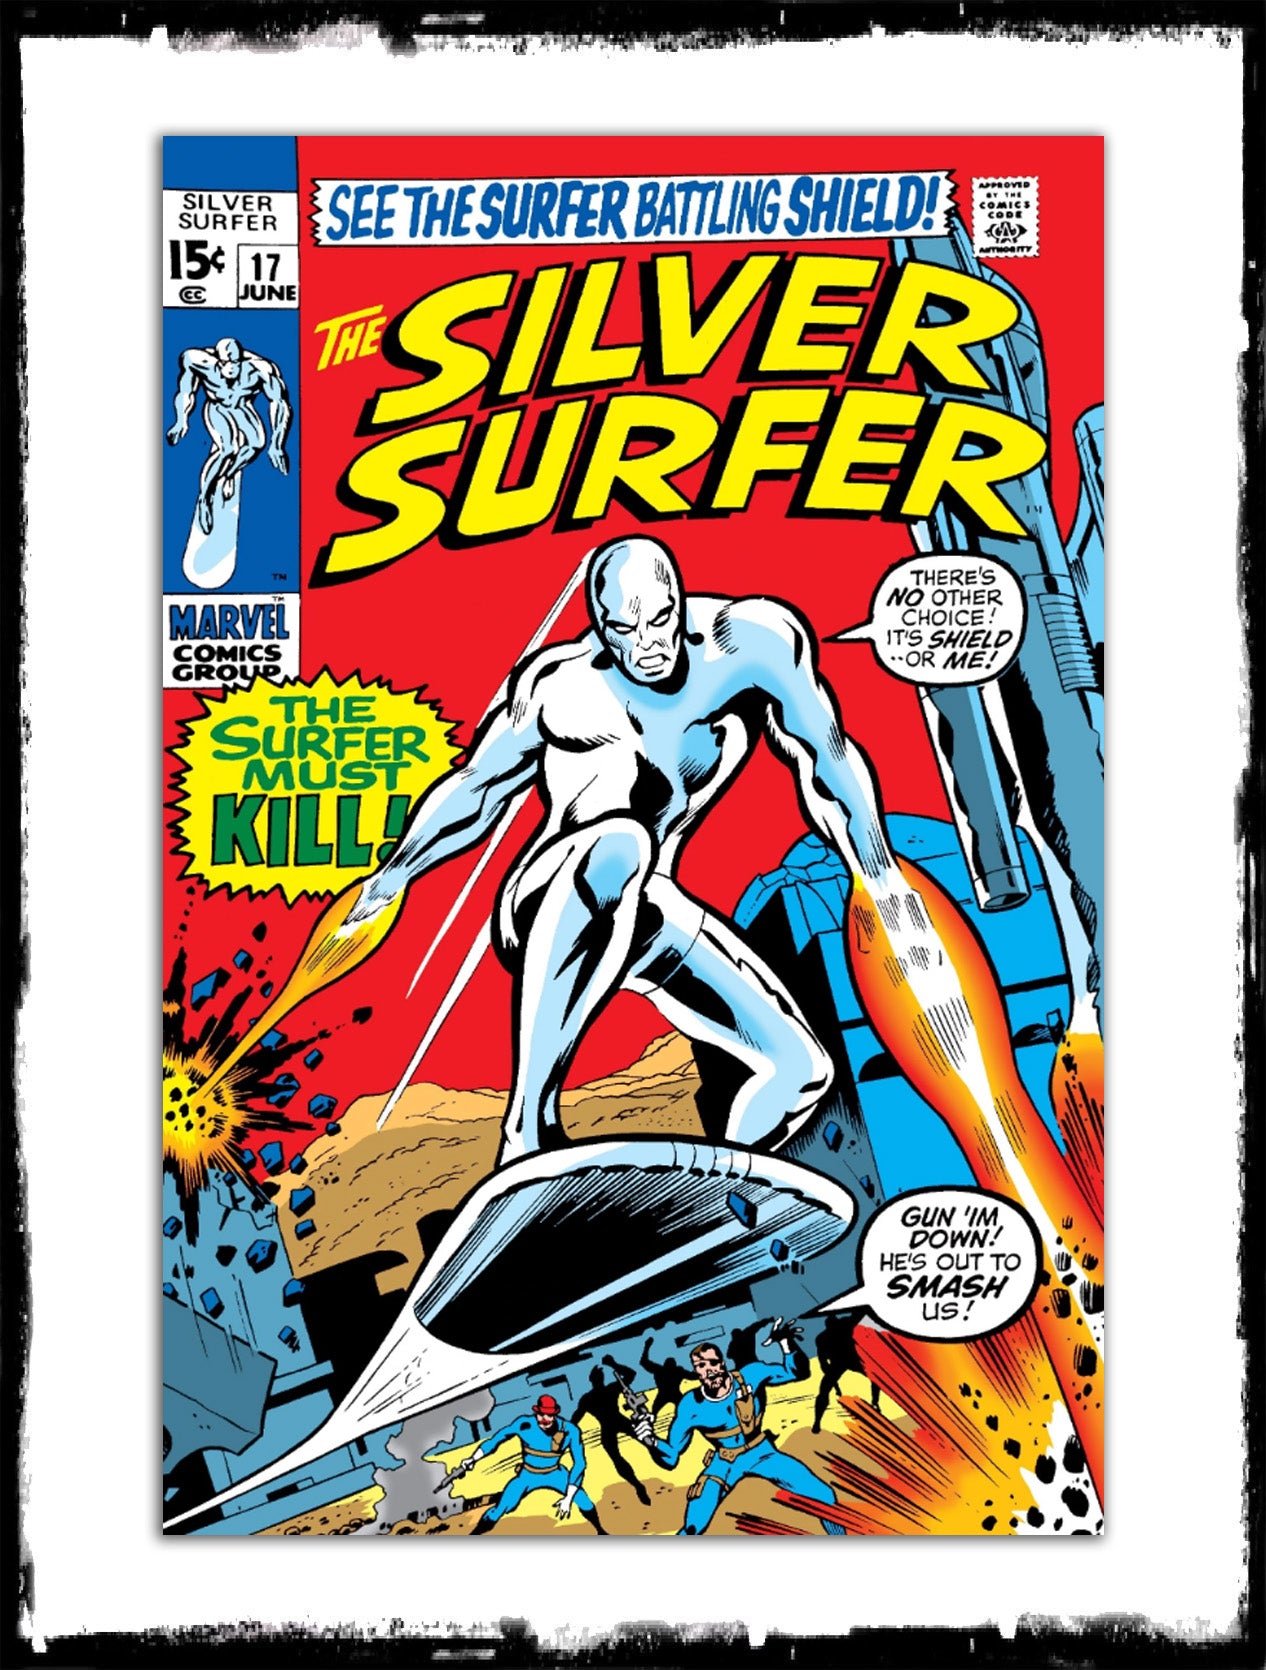 SILVER SURFER - #17 “THE SURFER MUST KILL” (1969 - G/VG)